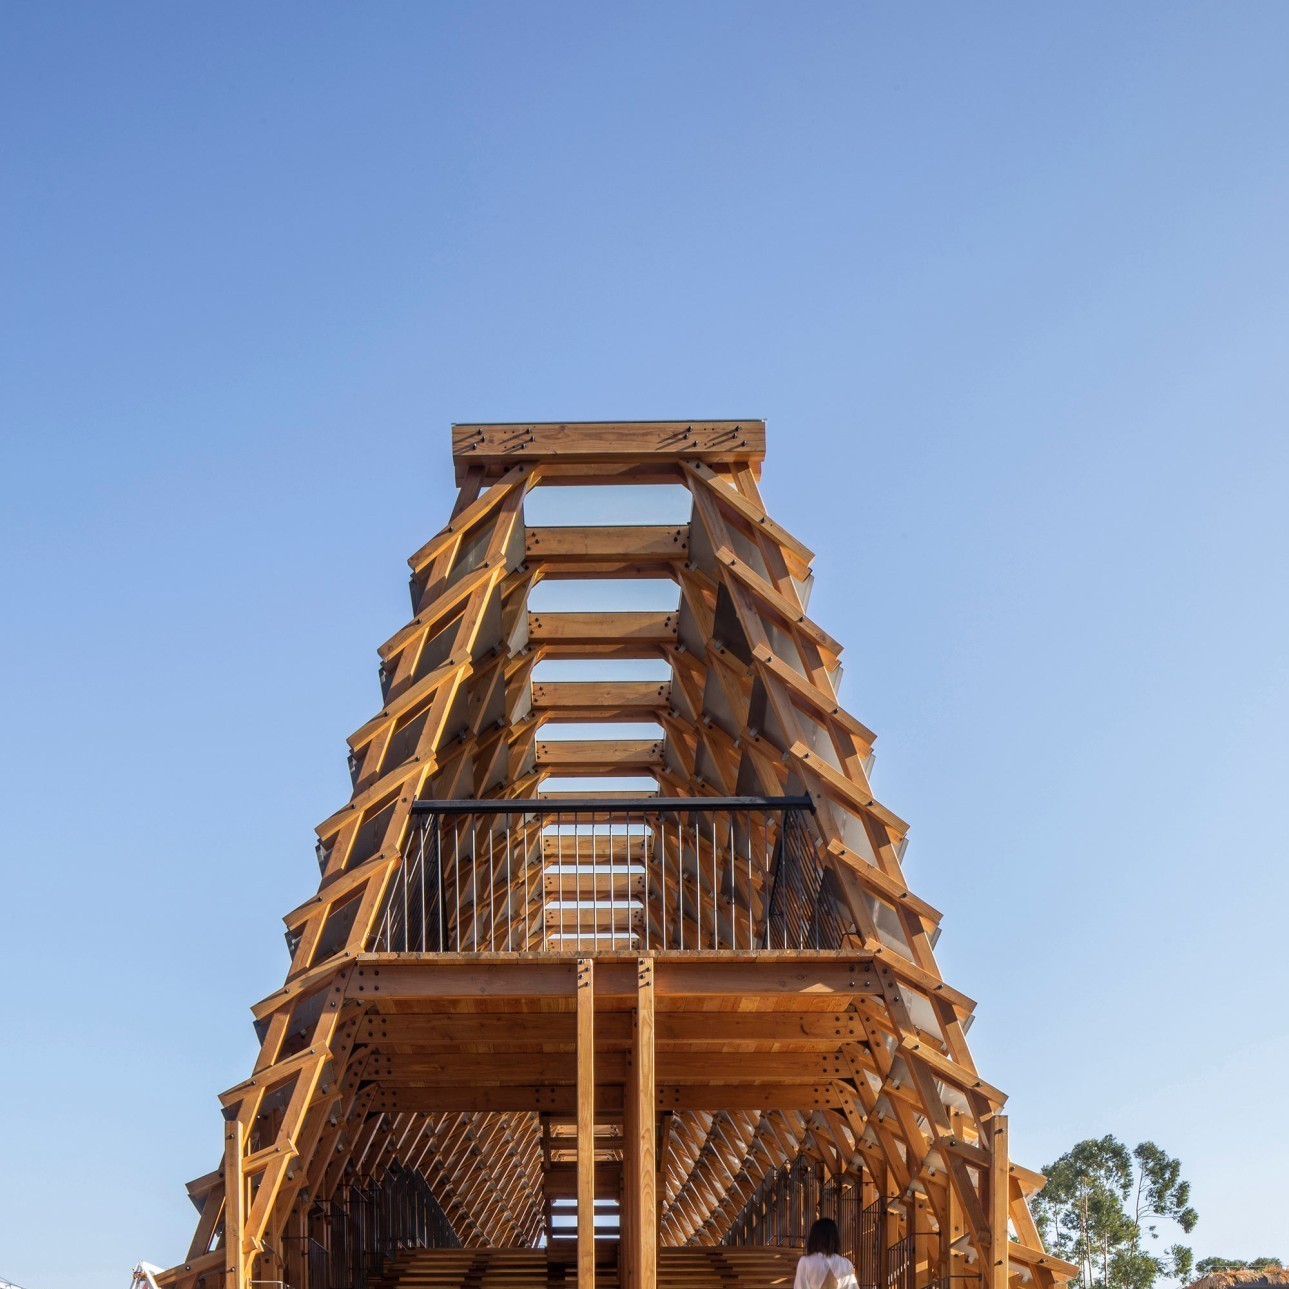 Visualisation de la structure en bois de pin et entrée du pont du côté ouest.